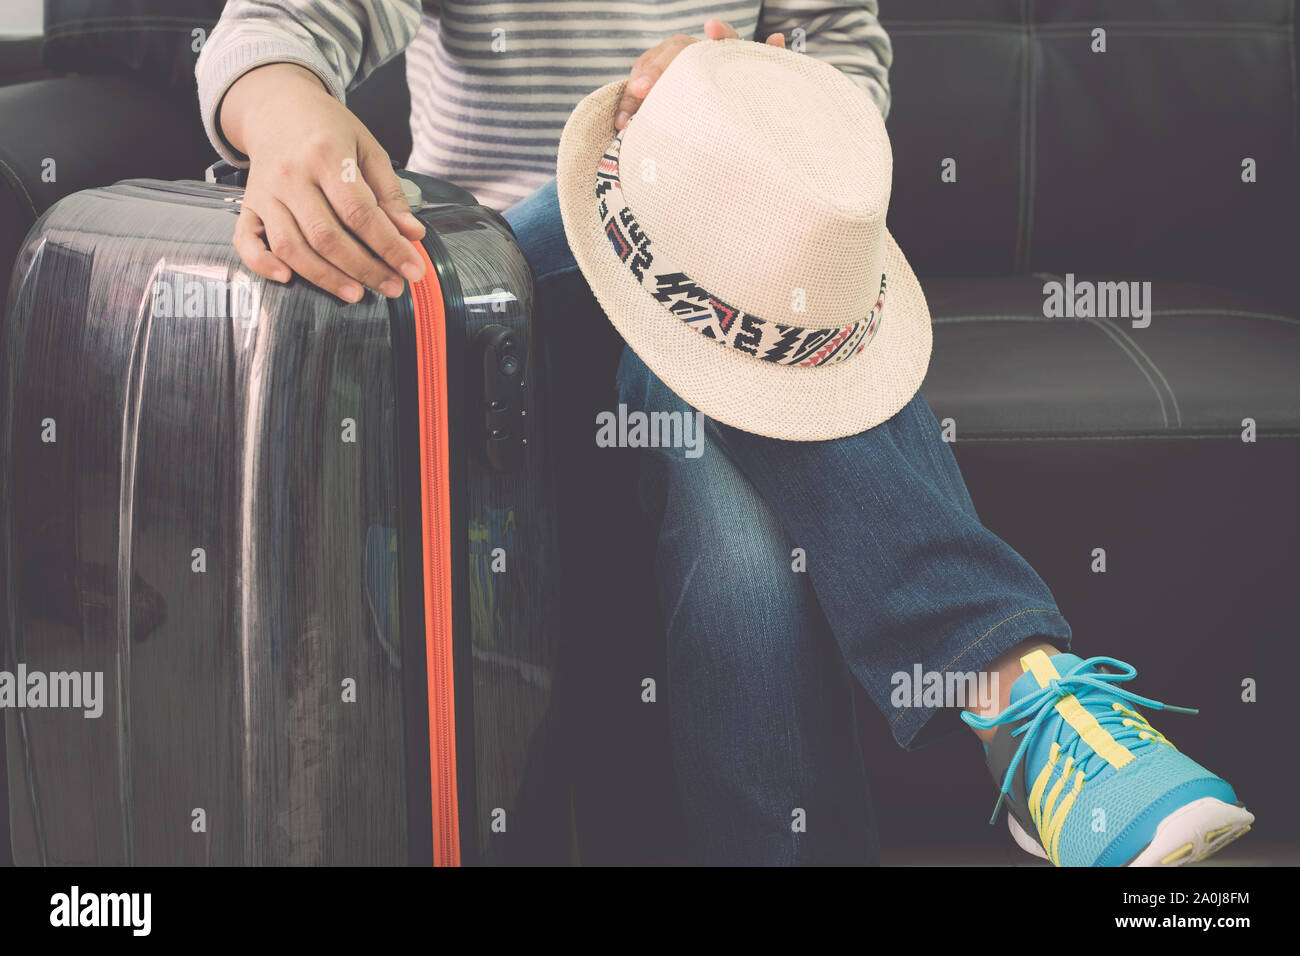 Voyageuses est assis avec sac de voyage et chapeau de paille sur un canapé en cuir à l'aéroport. Concept de voyage. Banque D'Images